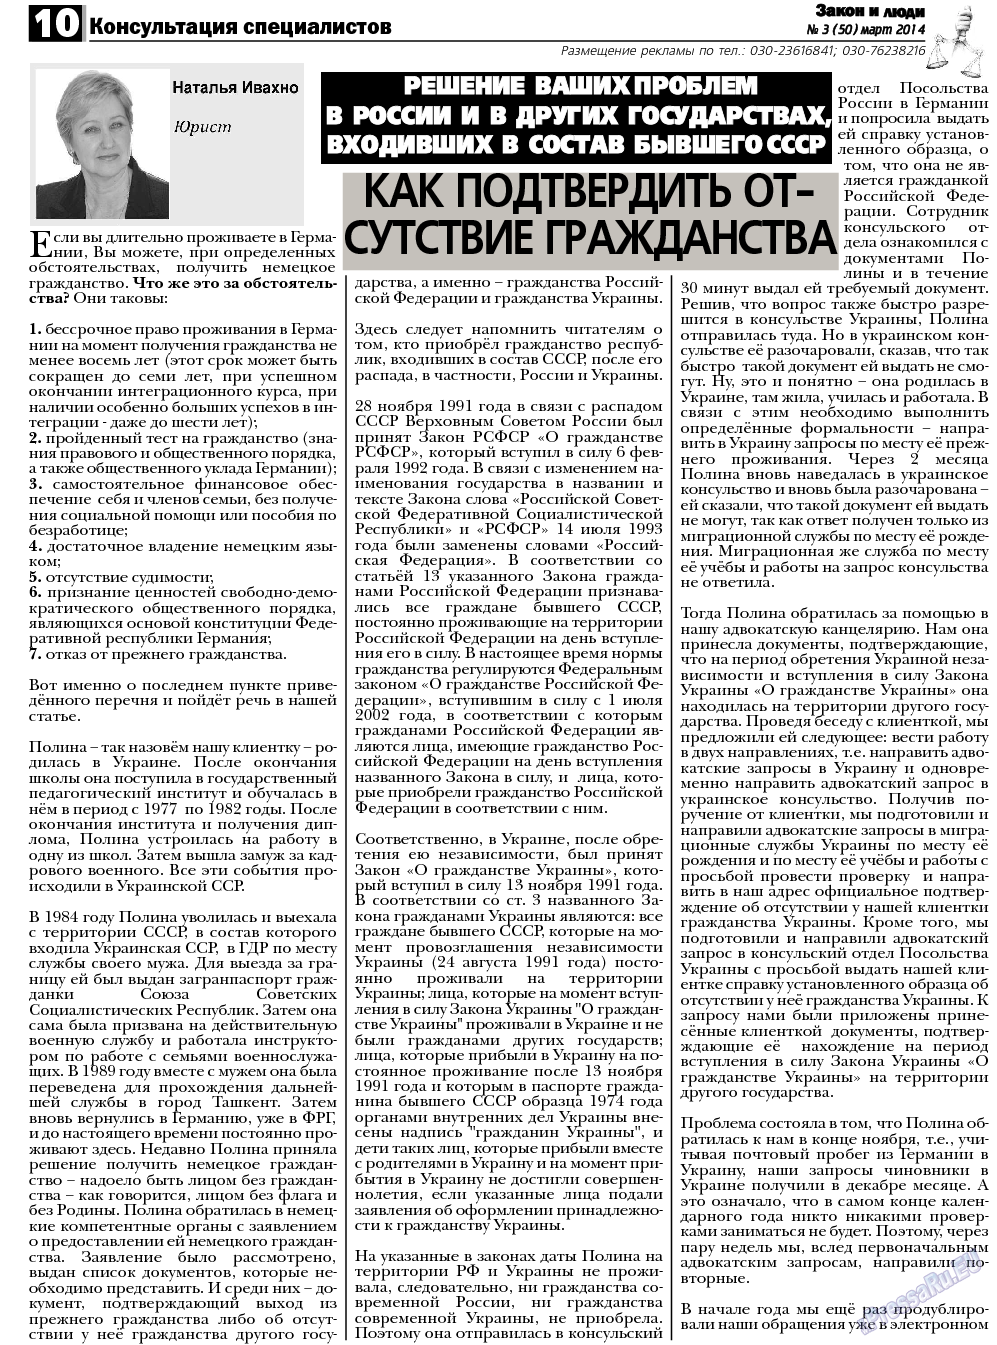 Закон и люди, газета. 2014 №3 стр.10